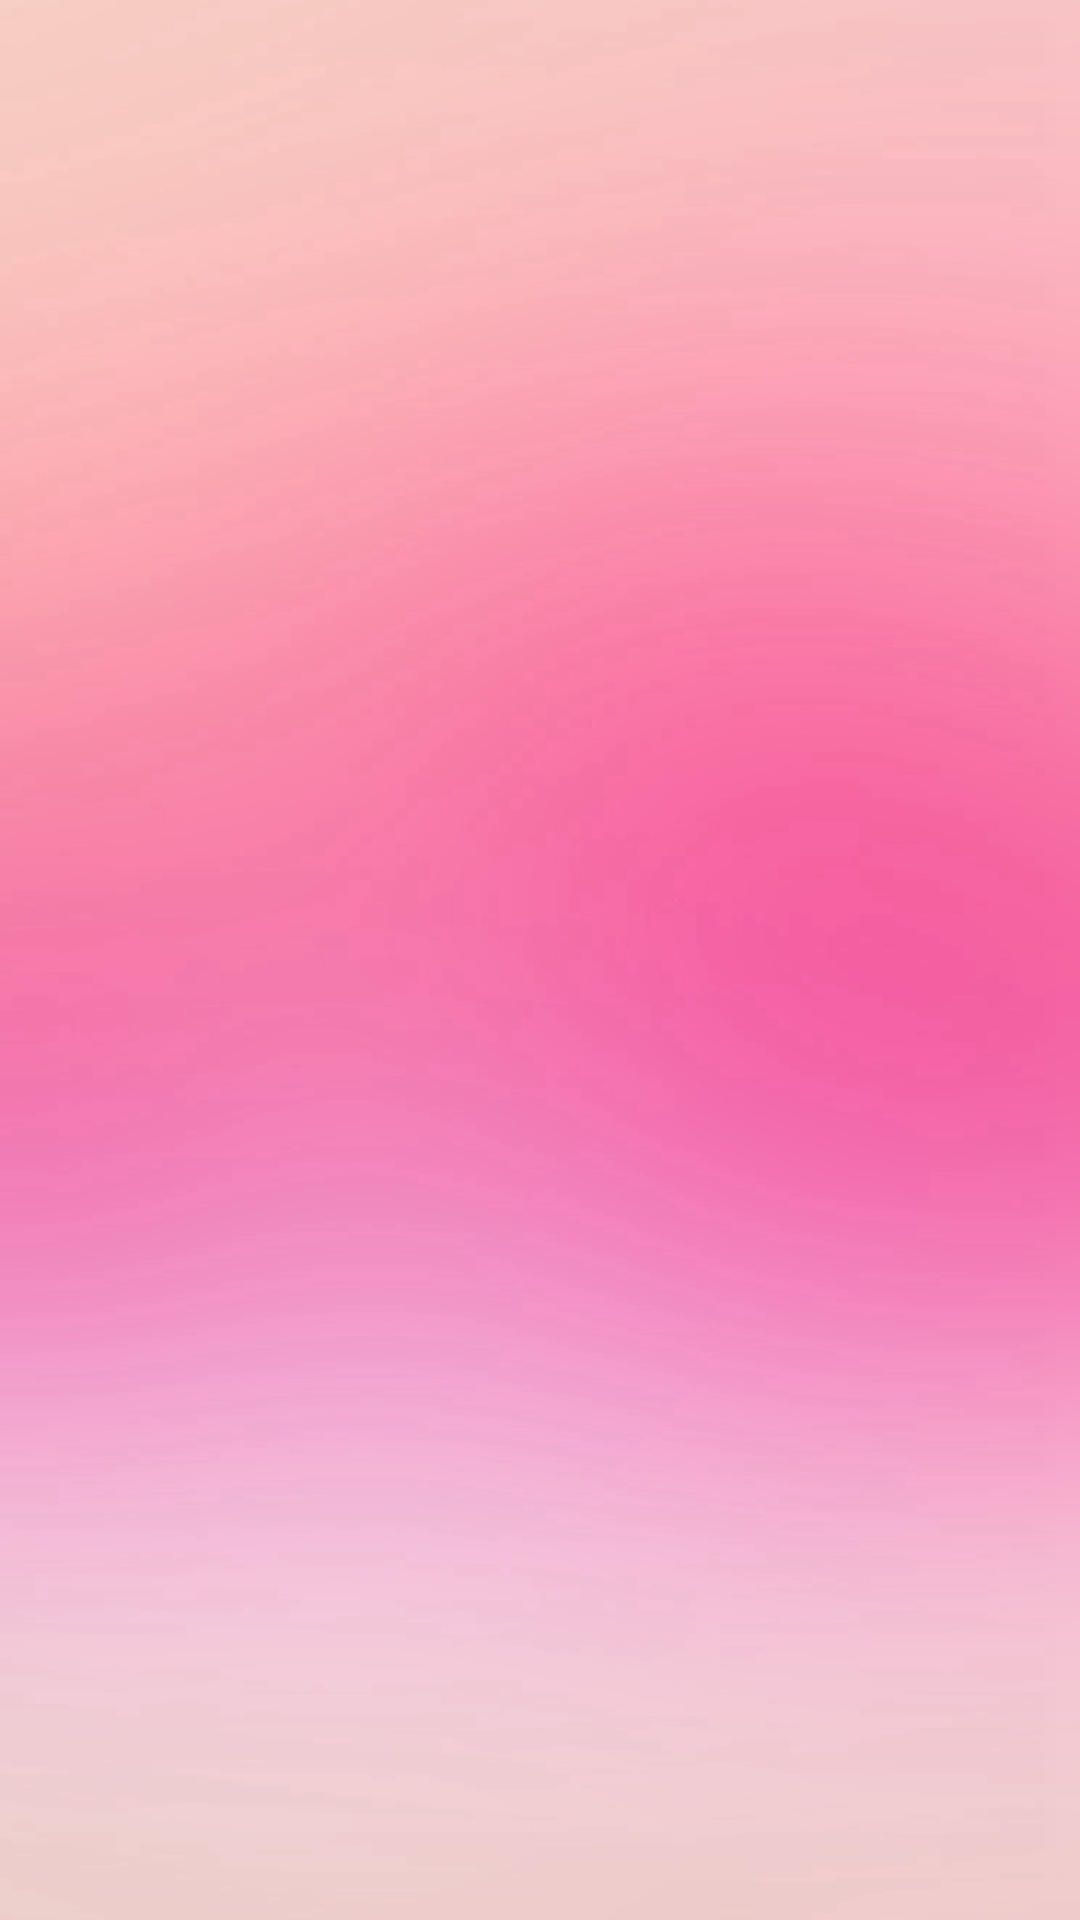 シンプルなピンクのスマホ壁紙 Iphone11 スマホ壁紙 待受画像ギャラリー